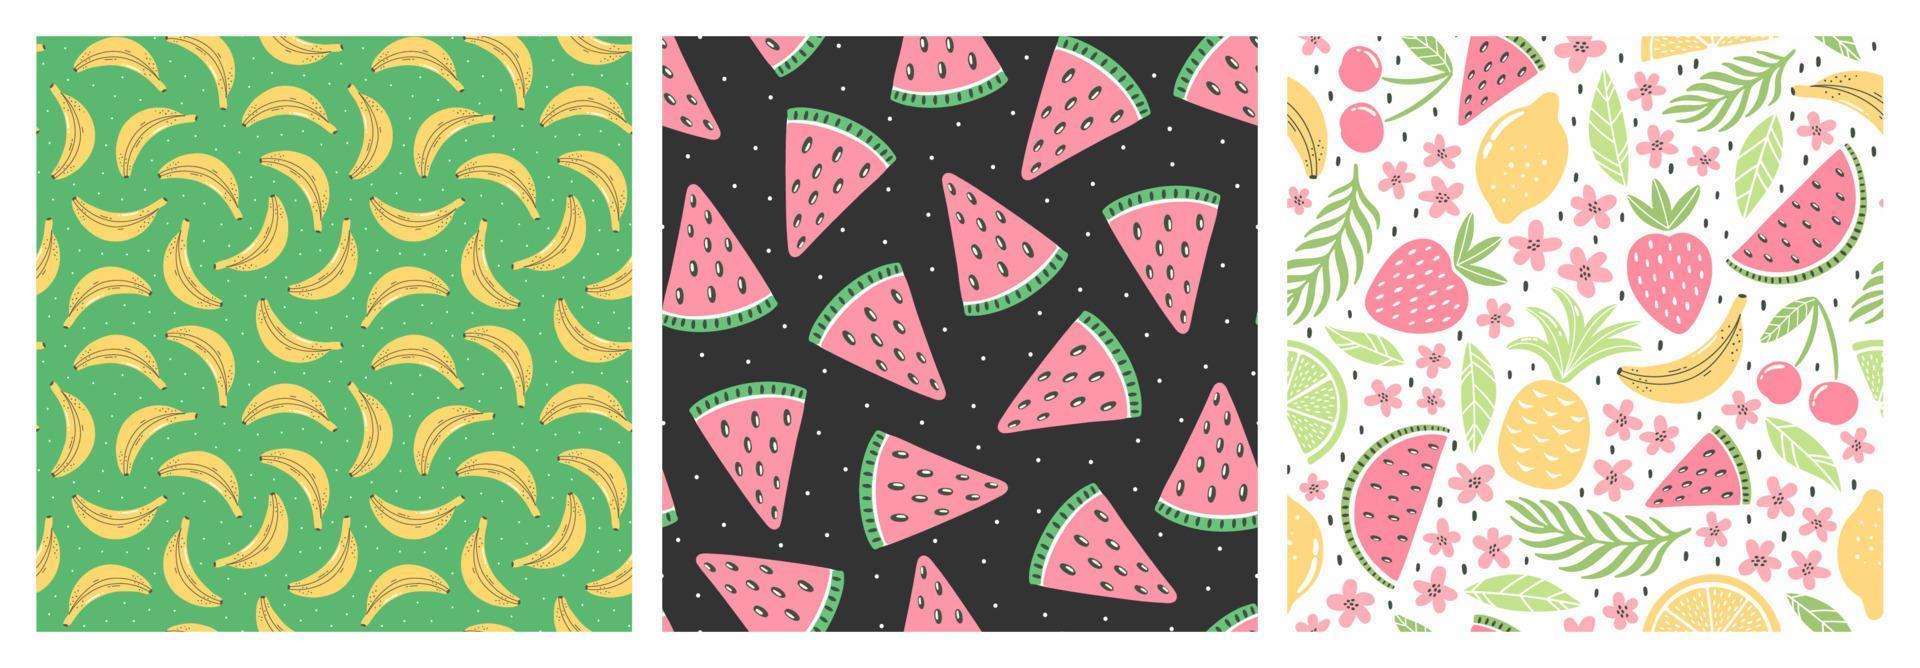 conjunto de patrones sin fisuras con frutas de colores para el diseño textil. fondo de verano en colores brillantes. ilustraciones vectoriales de moda dibujadas a mano. vector